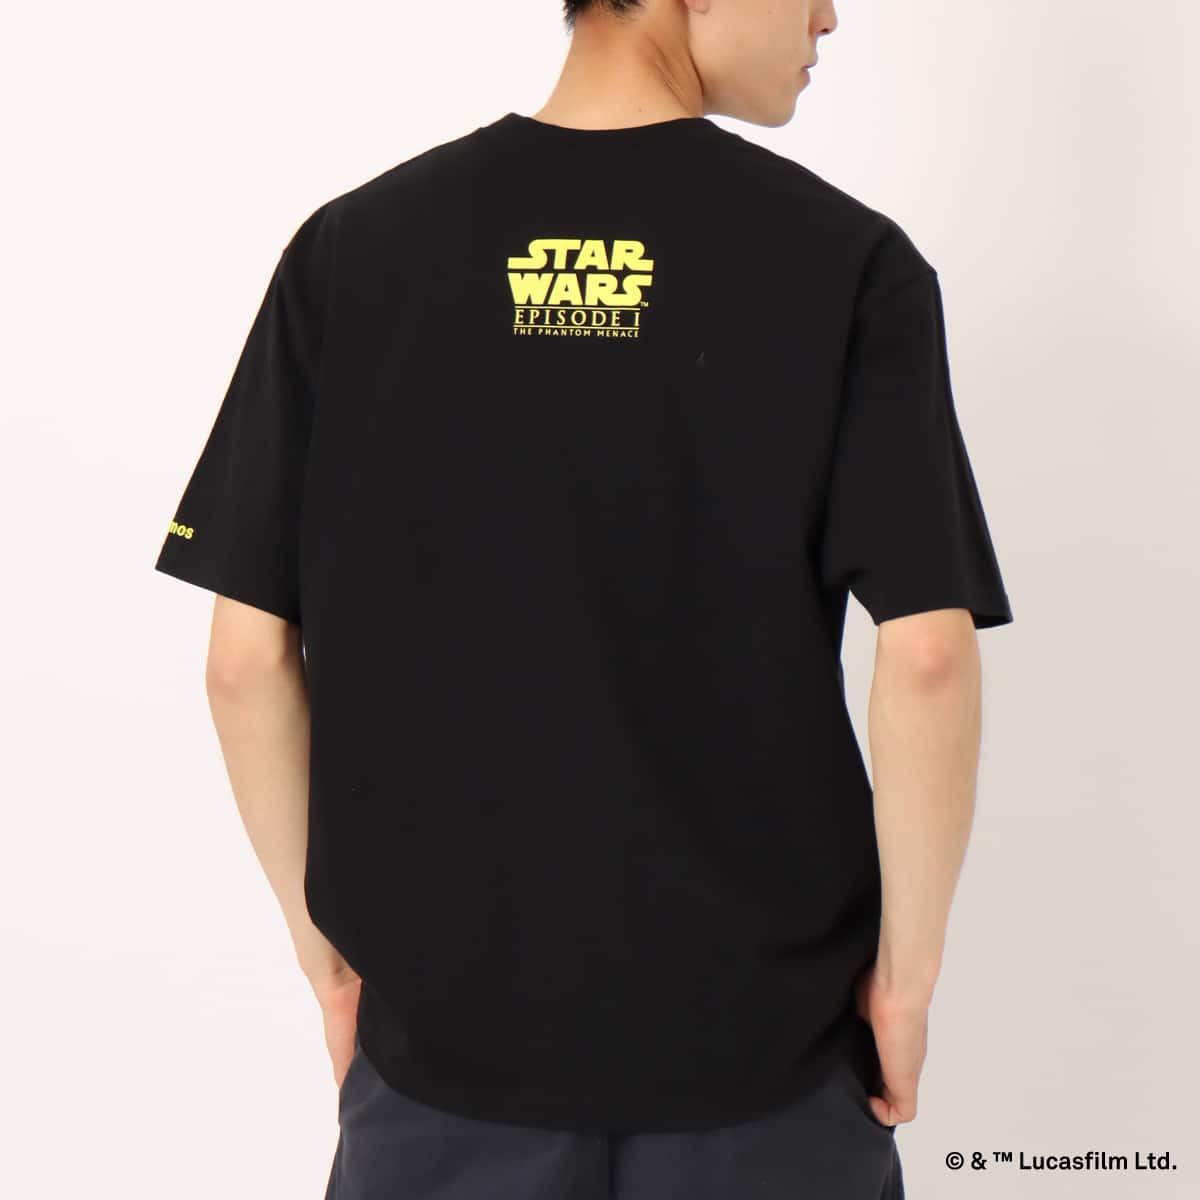 atmos 【STAR WARS】 EPISODE 1 / T-shirt BLACK